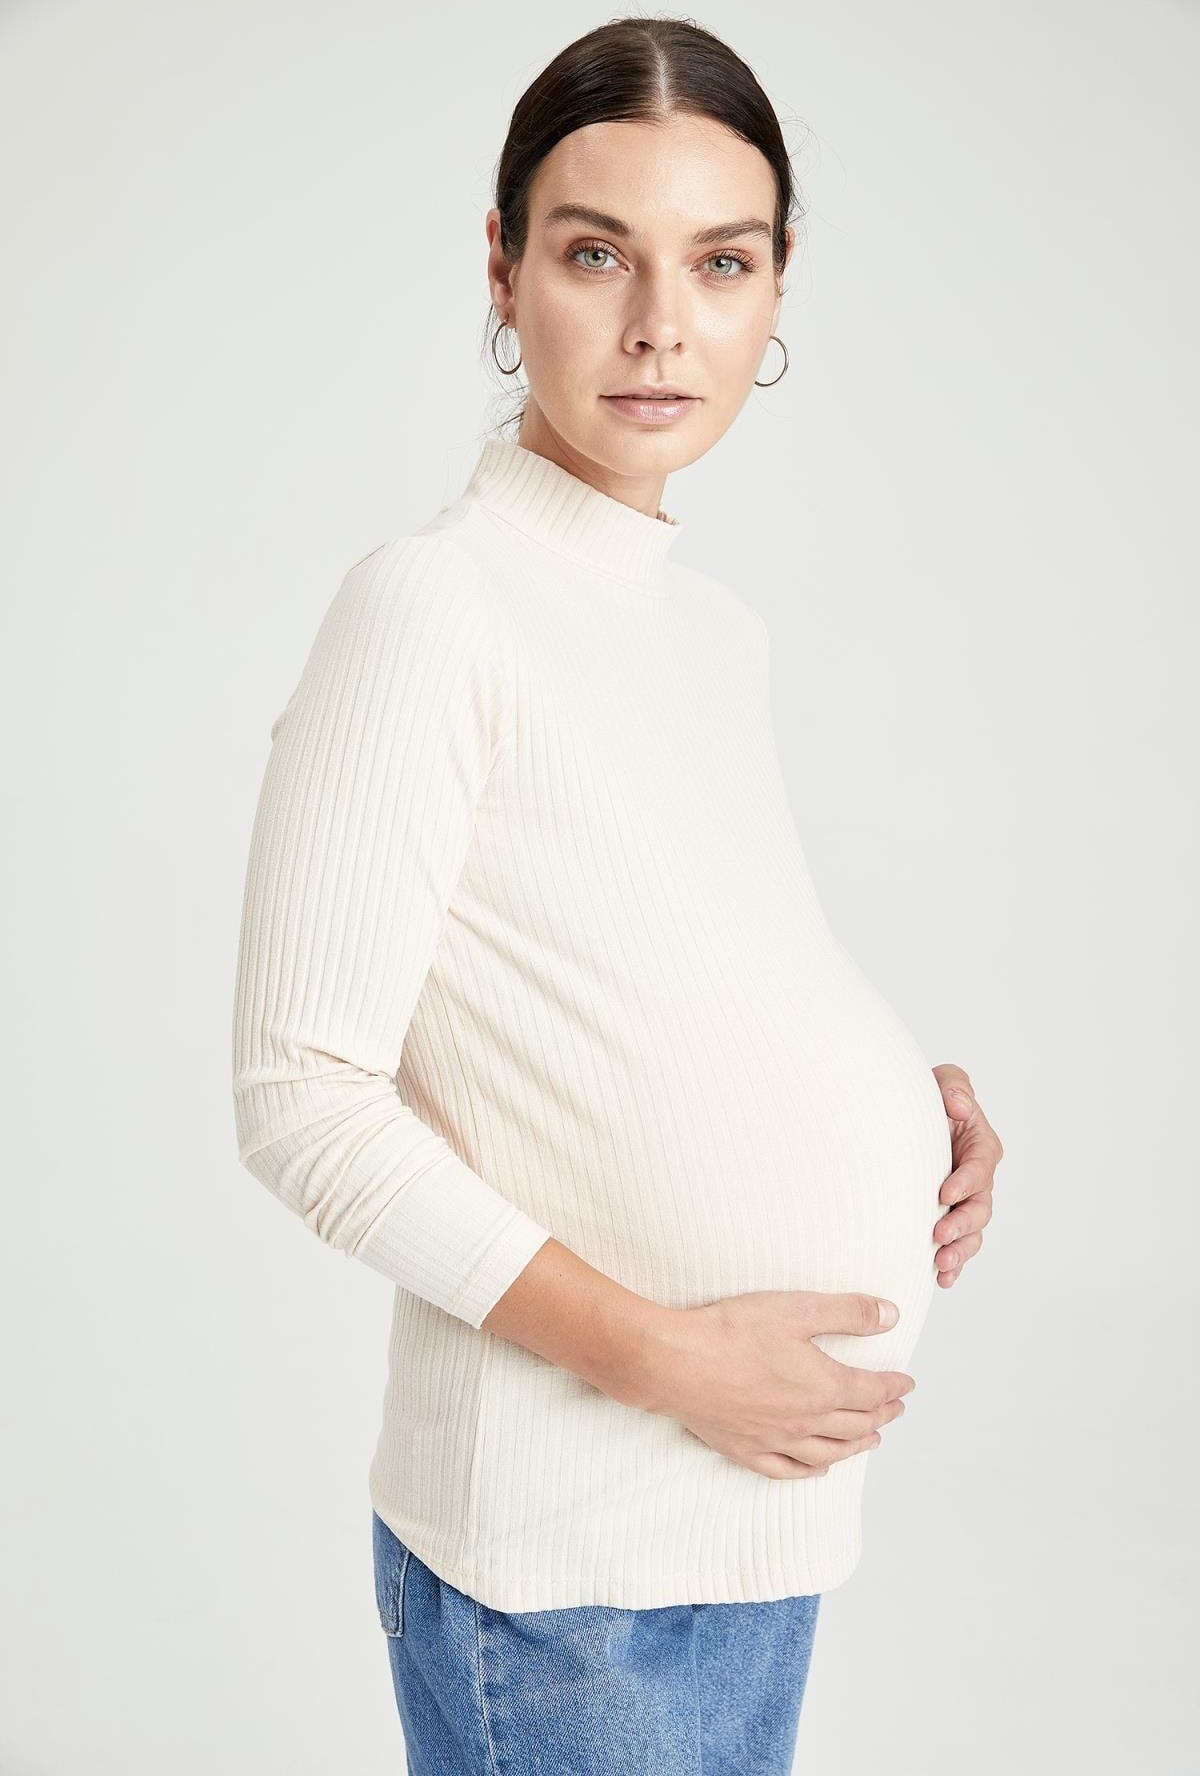 تصویر تیشرت بارداری متناسب یقه آستین بلند نیمه اسکی زنانه شیری برند Defacto کد 1633828270 